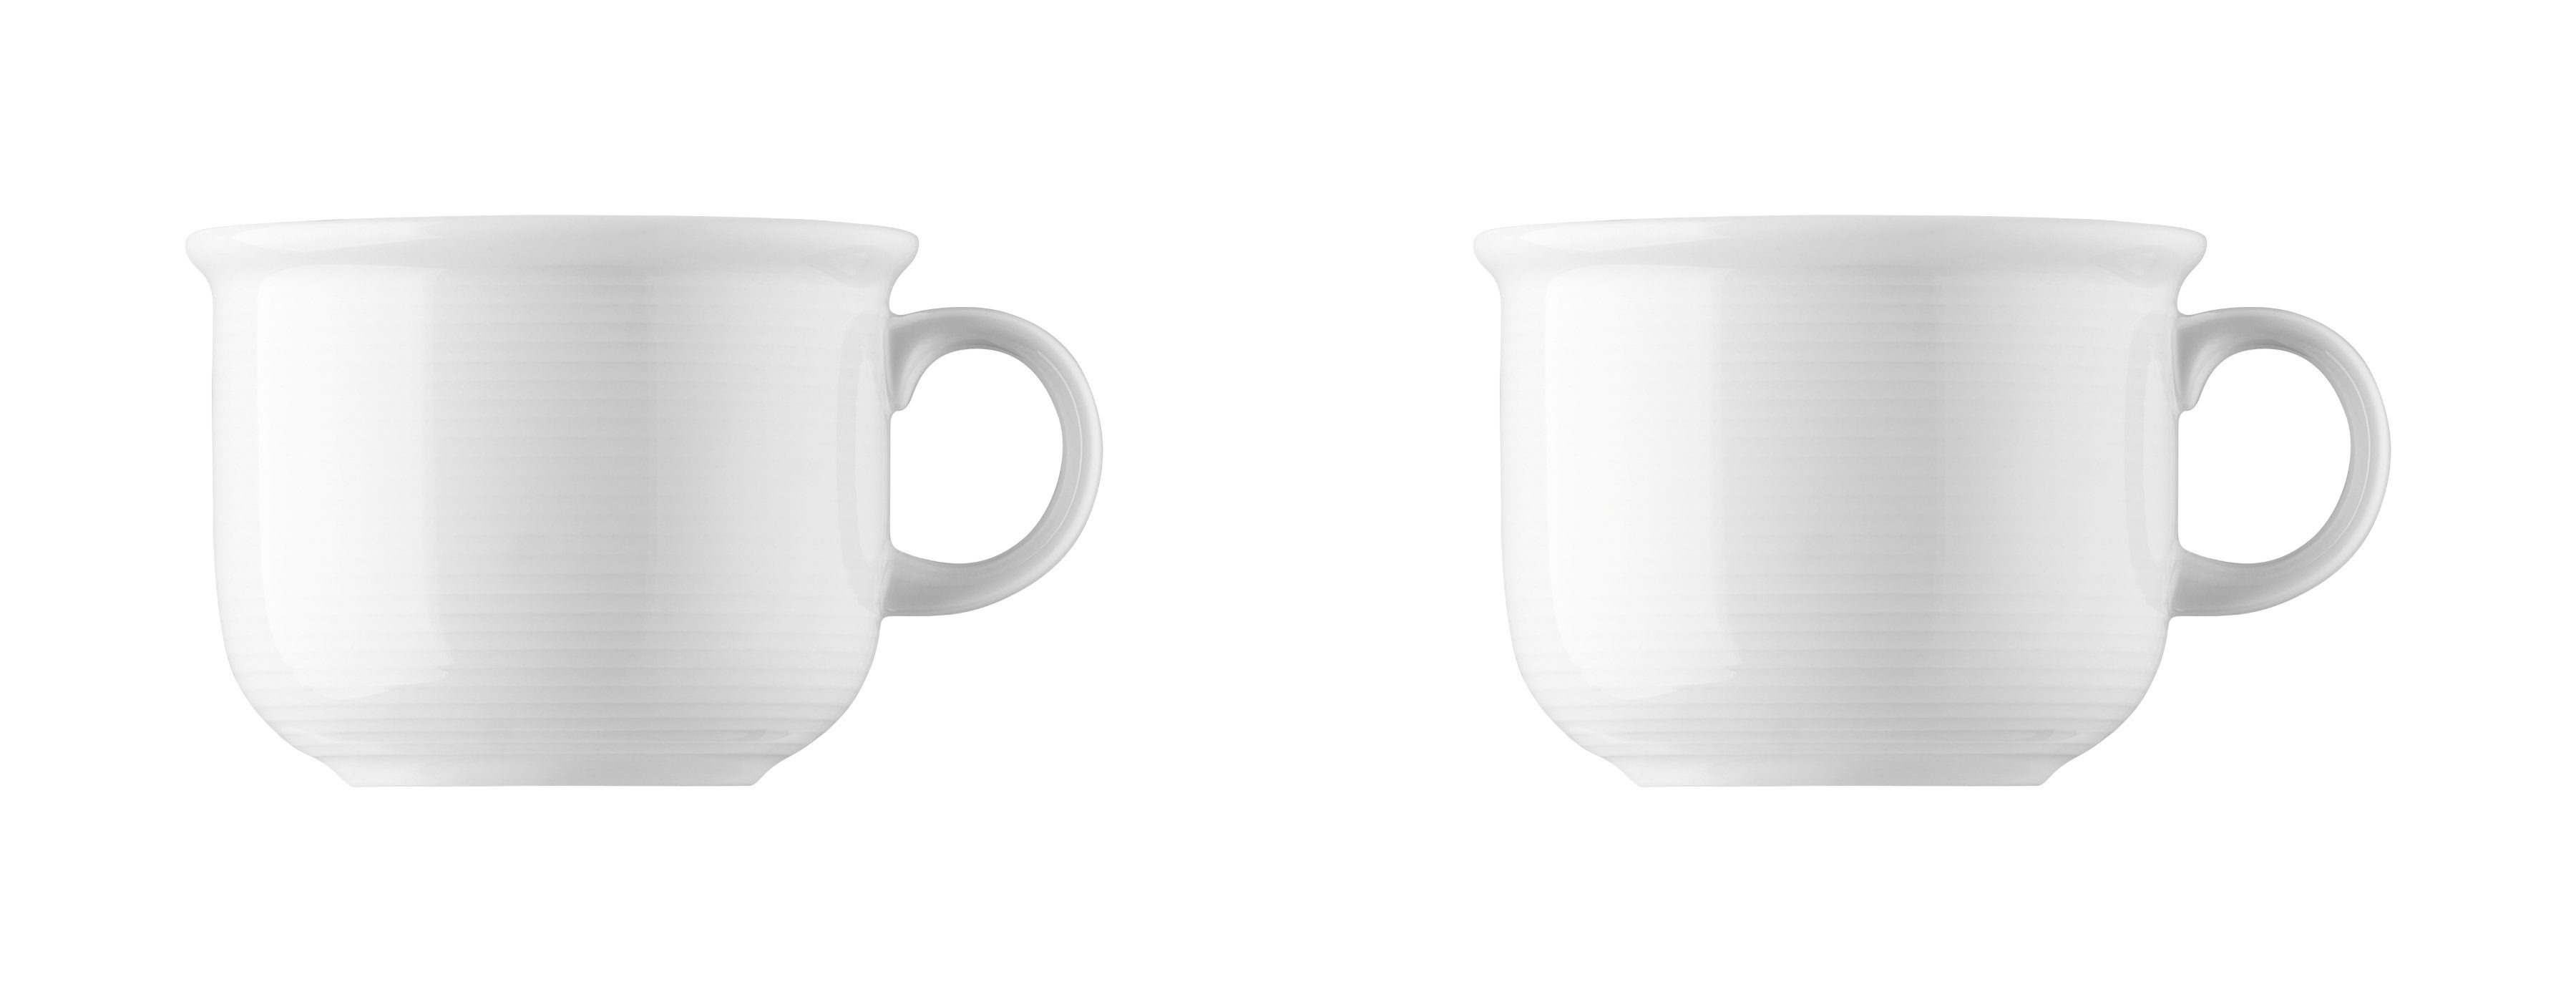 Thomas Porzellan Tasse Kaffee-Obertasse - TREND Weiß - 2 Stück, Porzellan, Porzellan, spülmaschinenfest und mikrowellengeeignet | Tassen